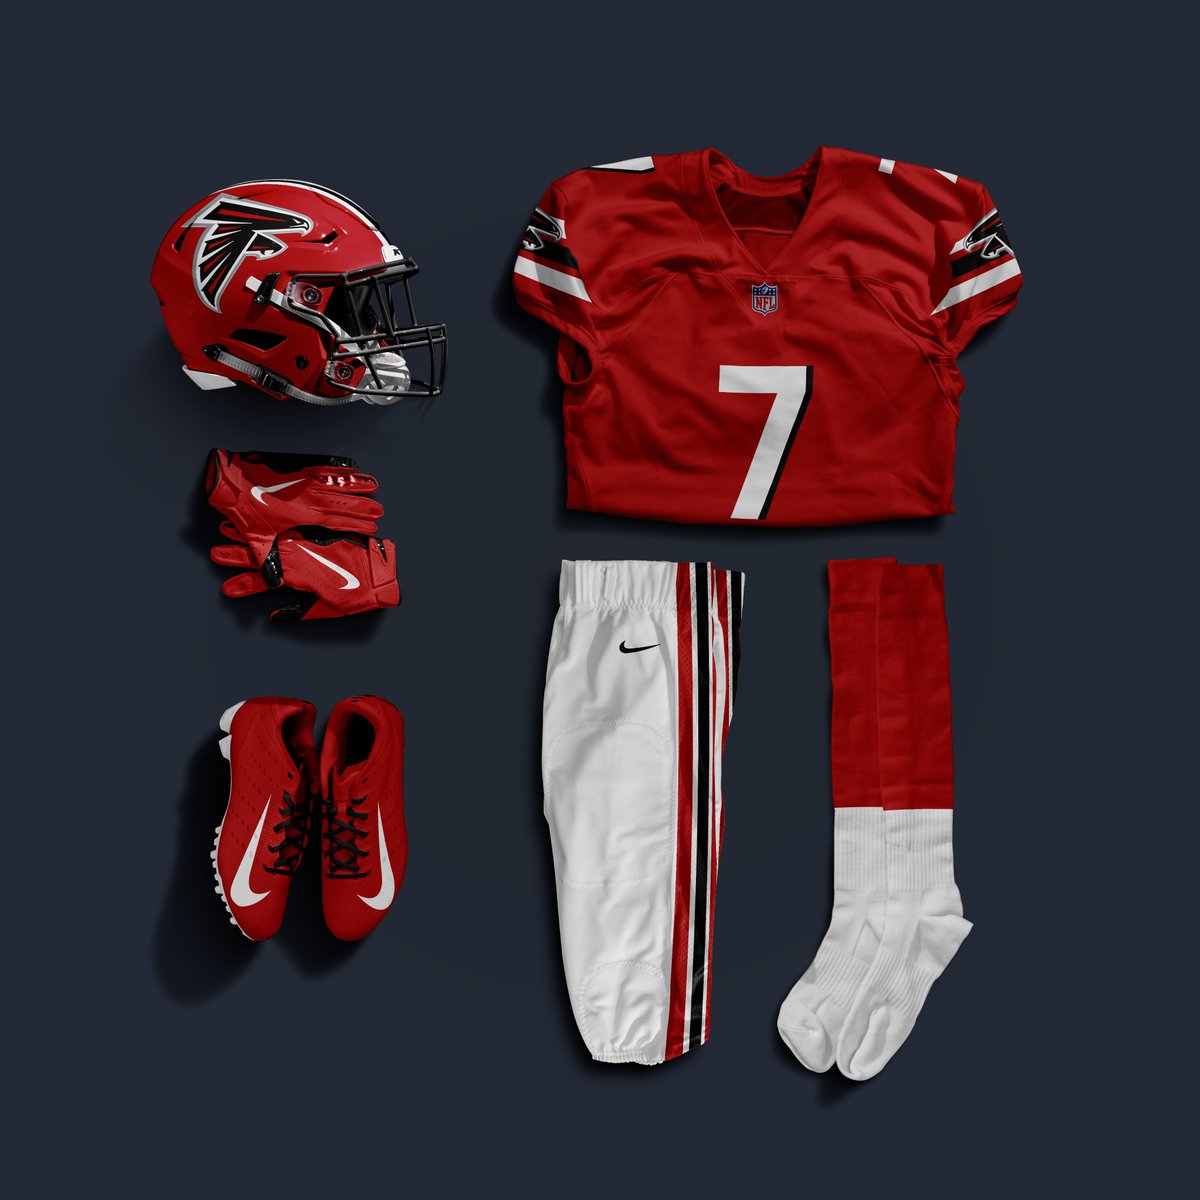 Atlanta Falcons combination uniform concept! - 1980s x 2020s